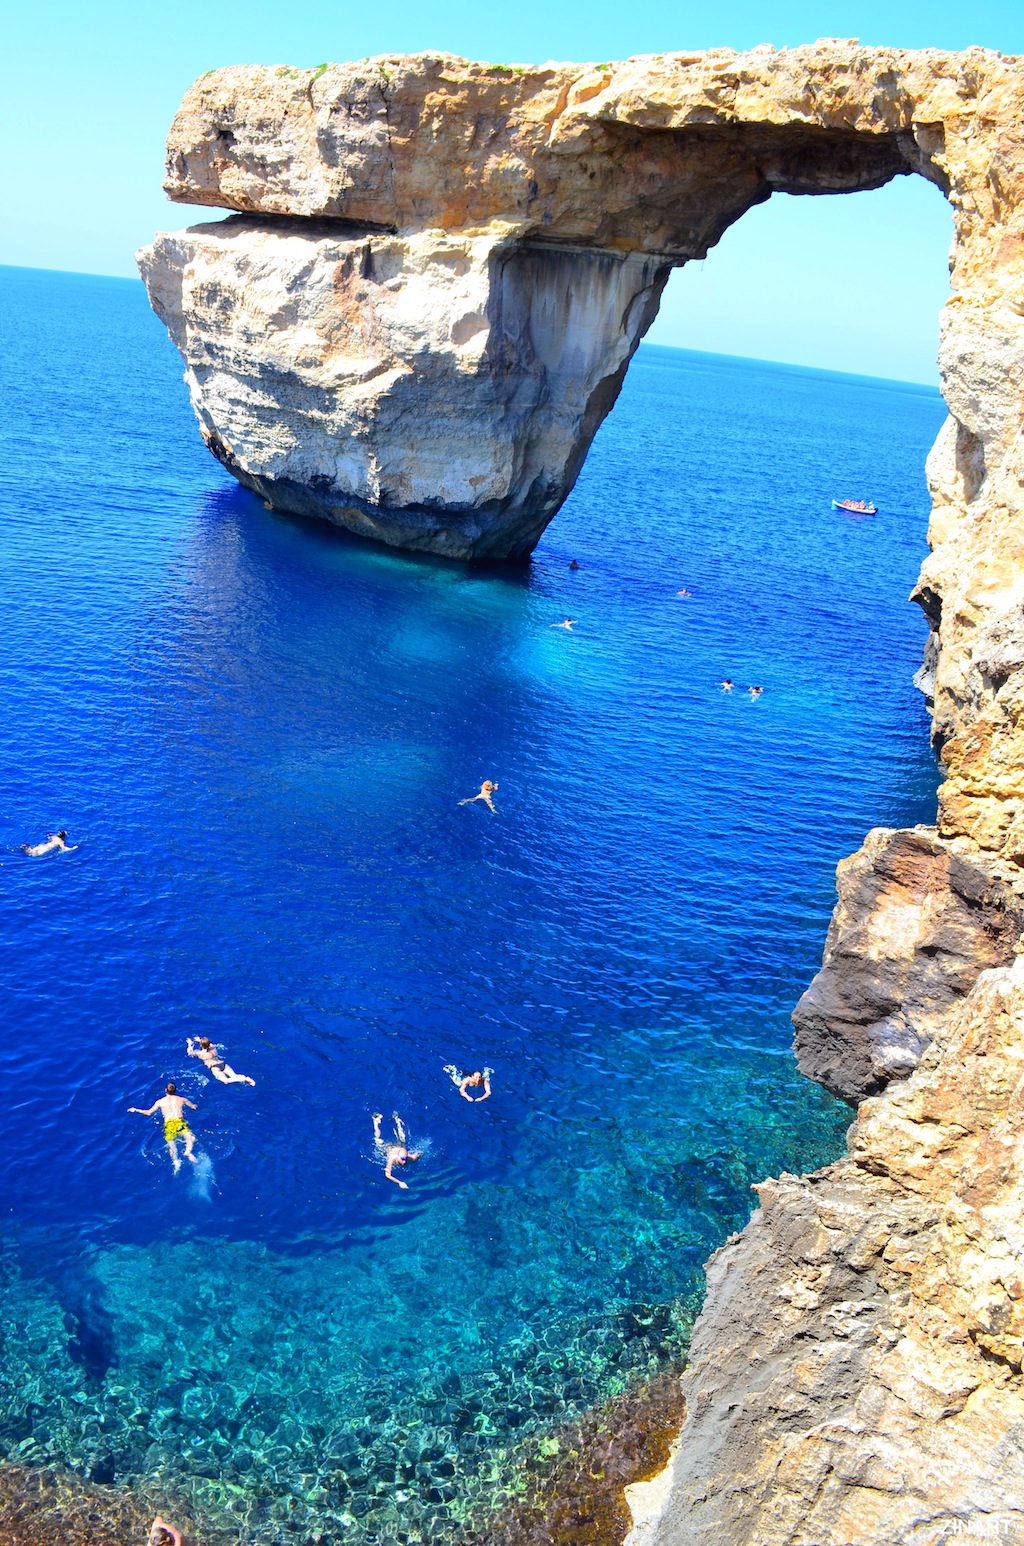 驚愕 桁外れに美しい海をマルタ共和国で発見した ガカプロ